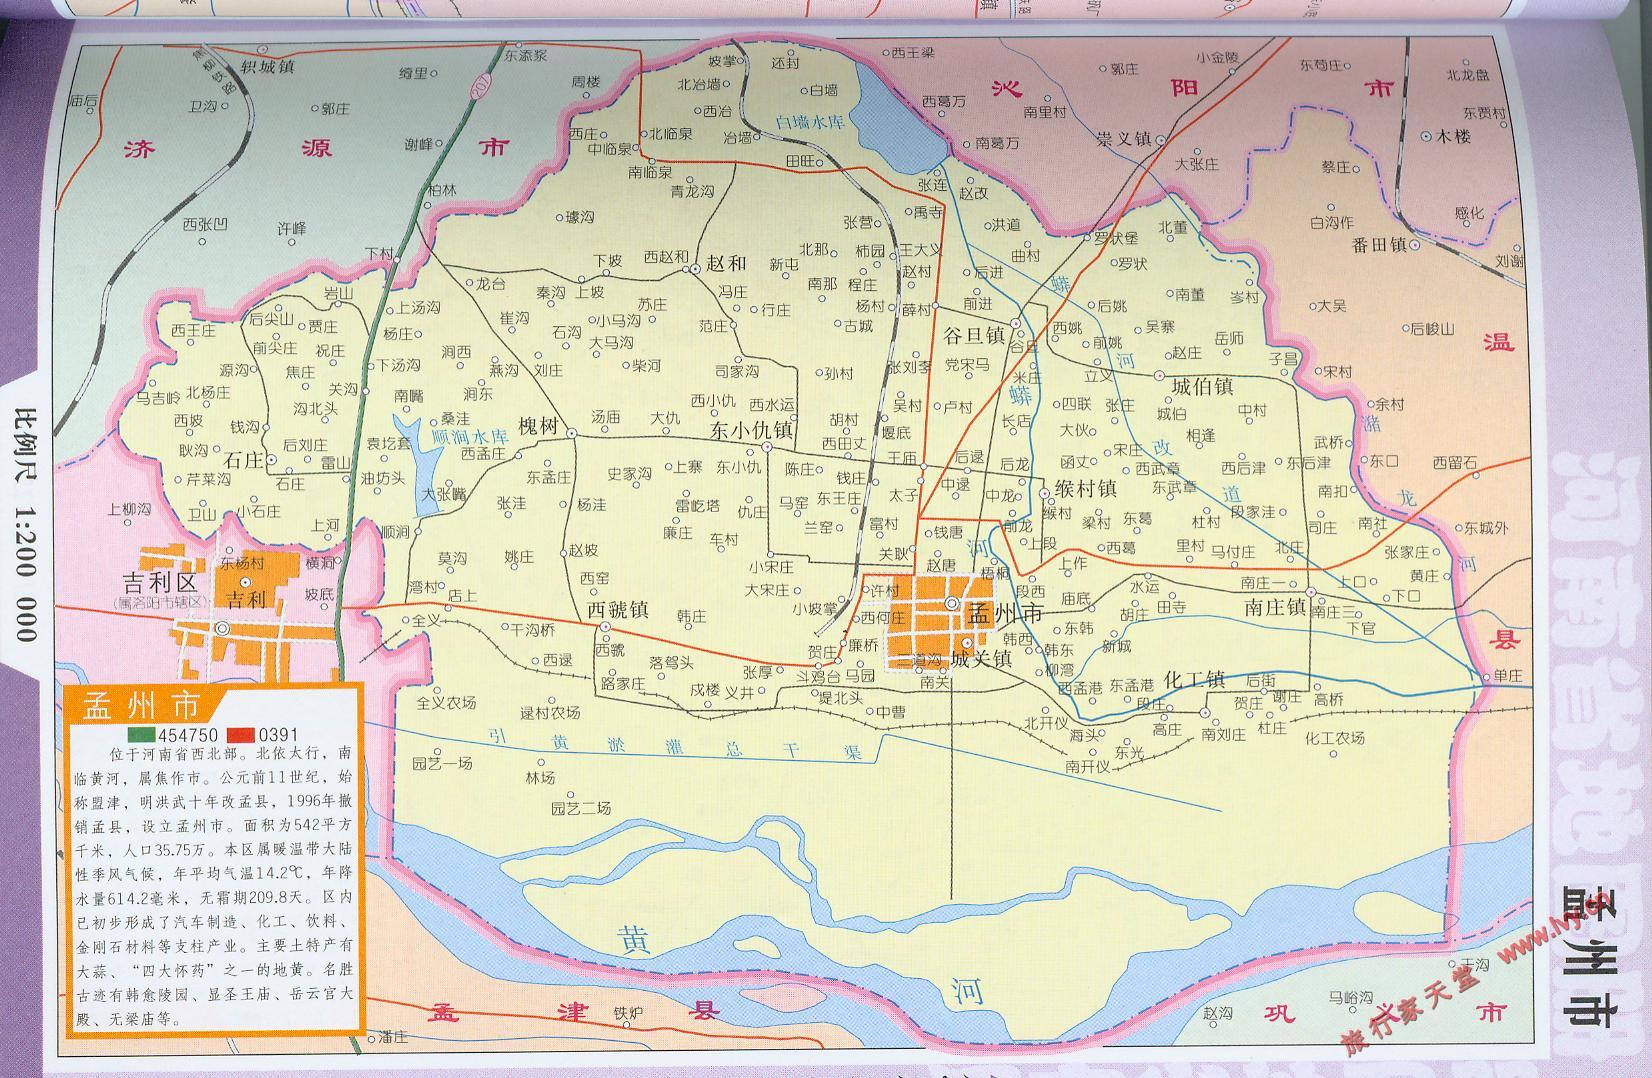 地图窝 中国 河南 焦作  (长按地图可以放大,保存,分享)图片